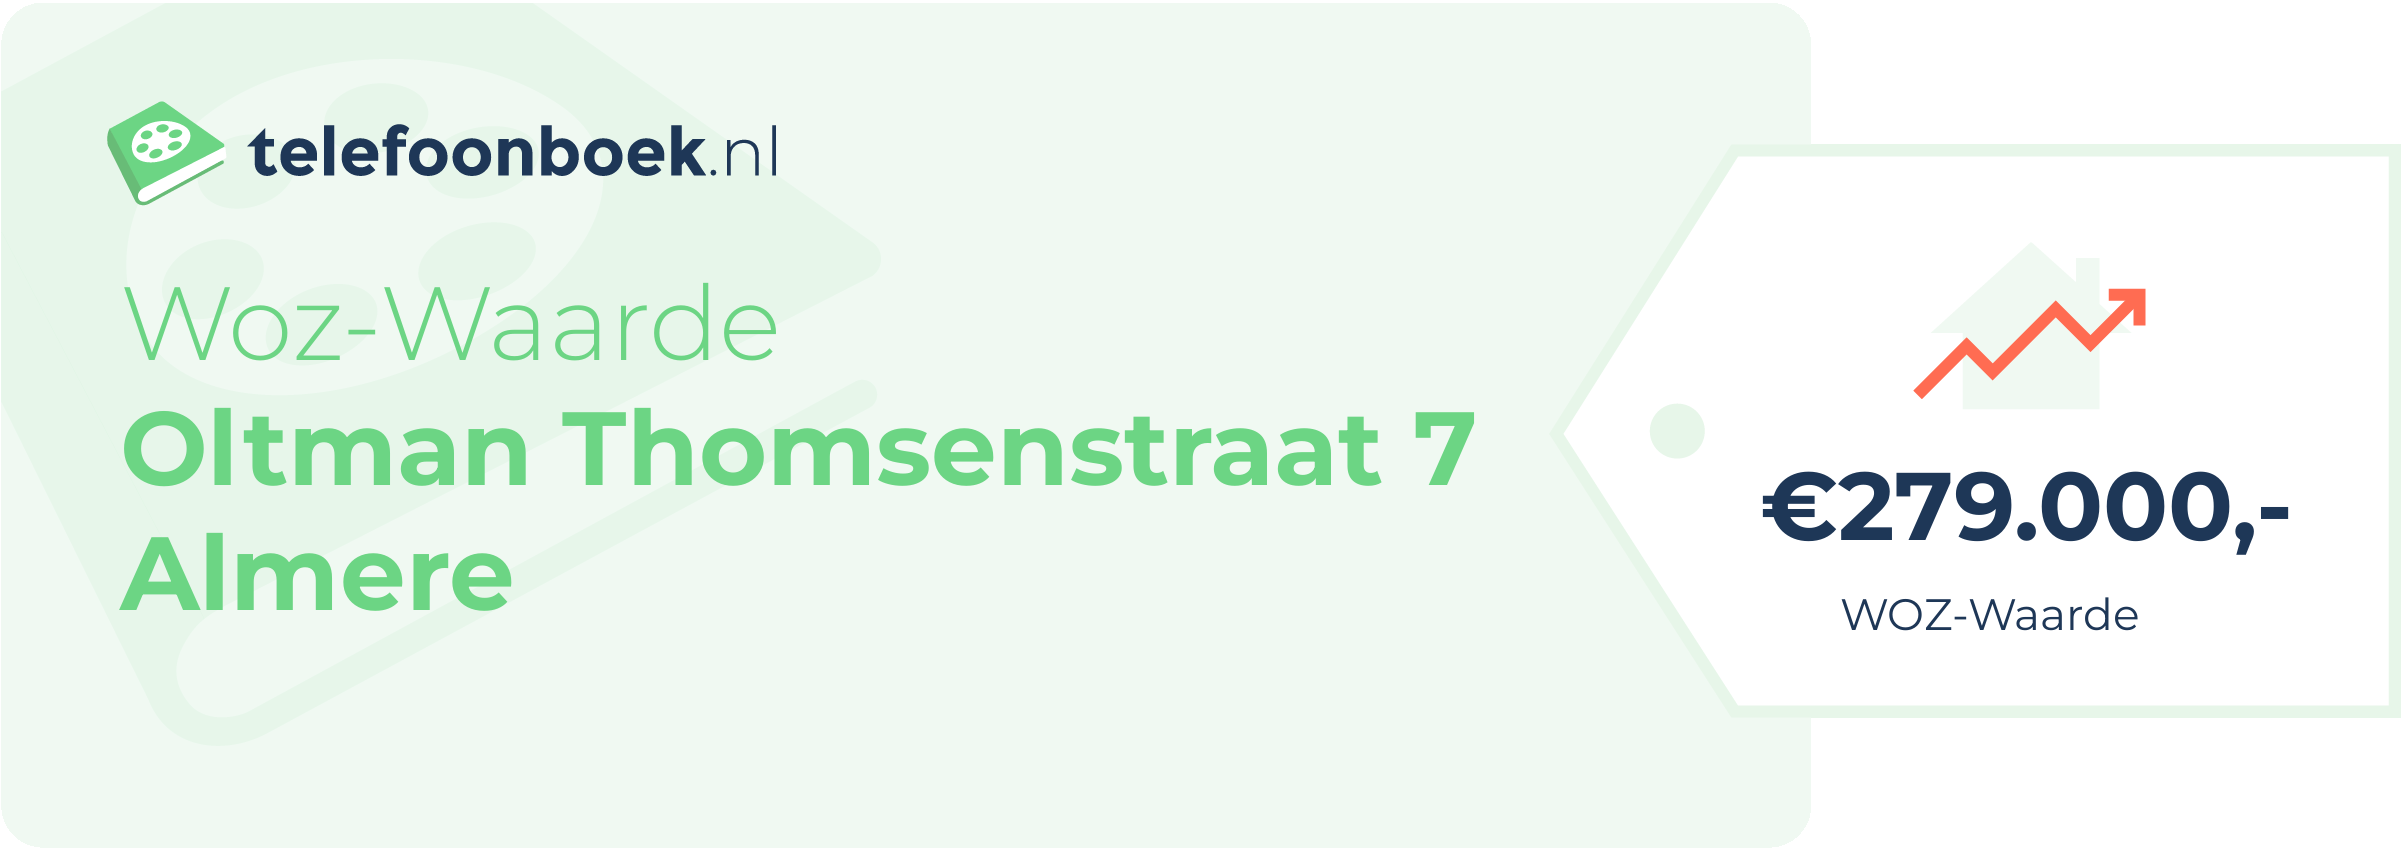 WOZ-waarde Oltman Thomsenstraat 7 Almere